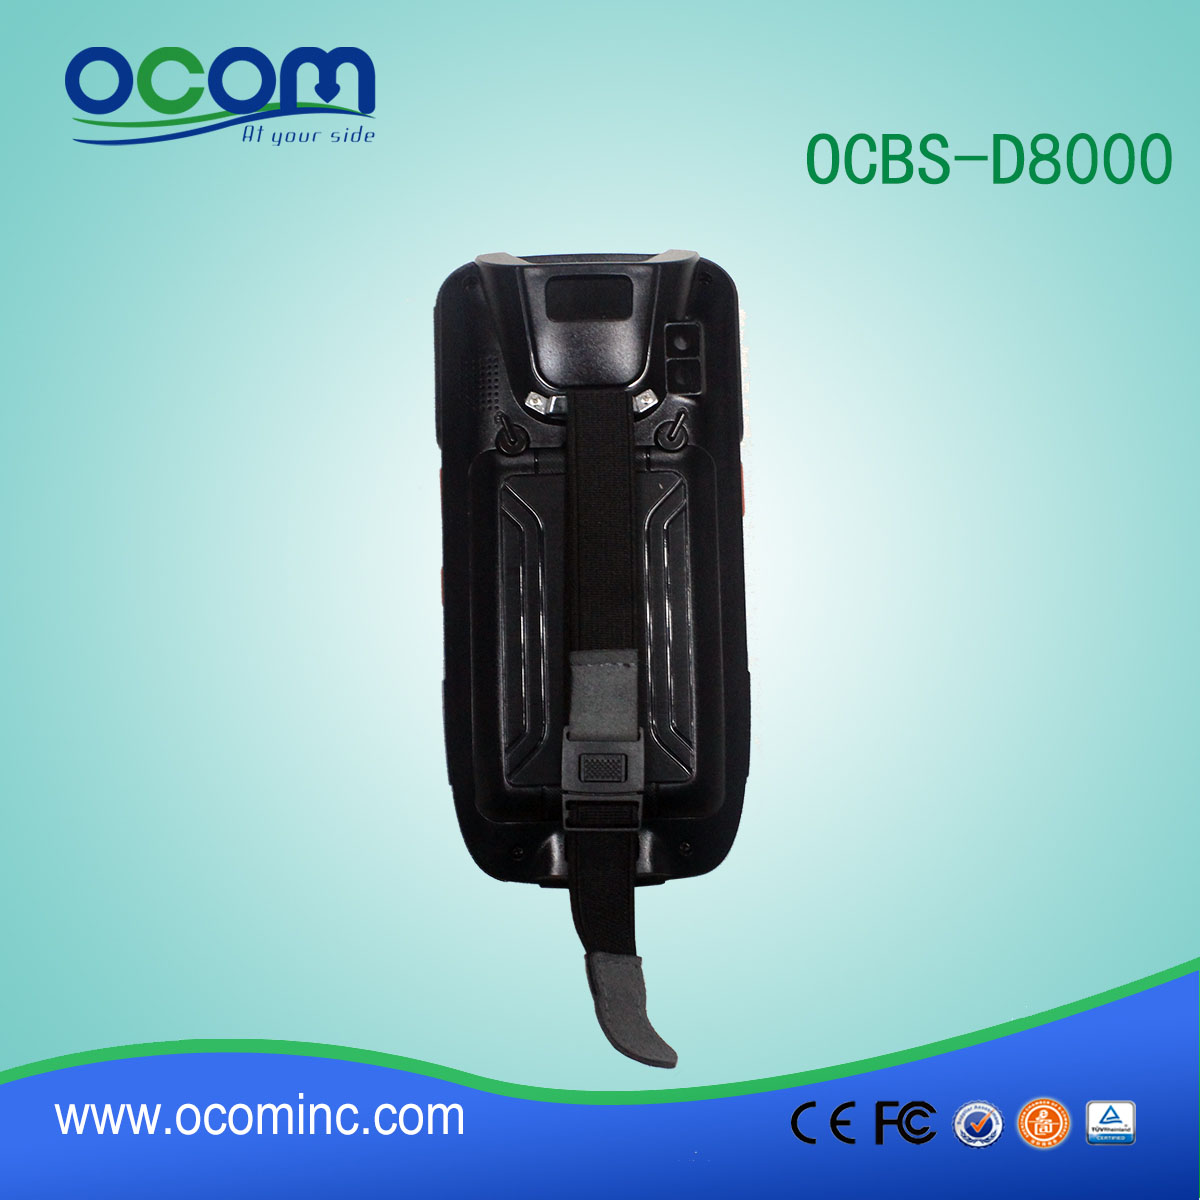 OCBs-D8000 Android кпк лазерный сканер штрих-кода